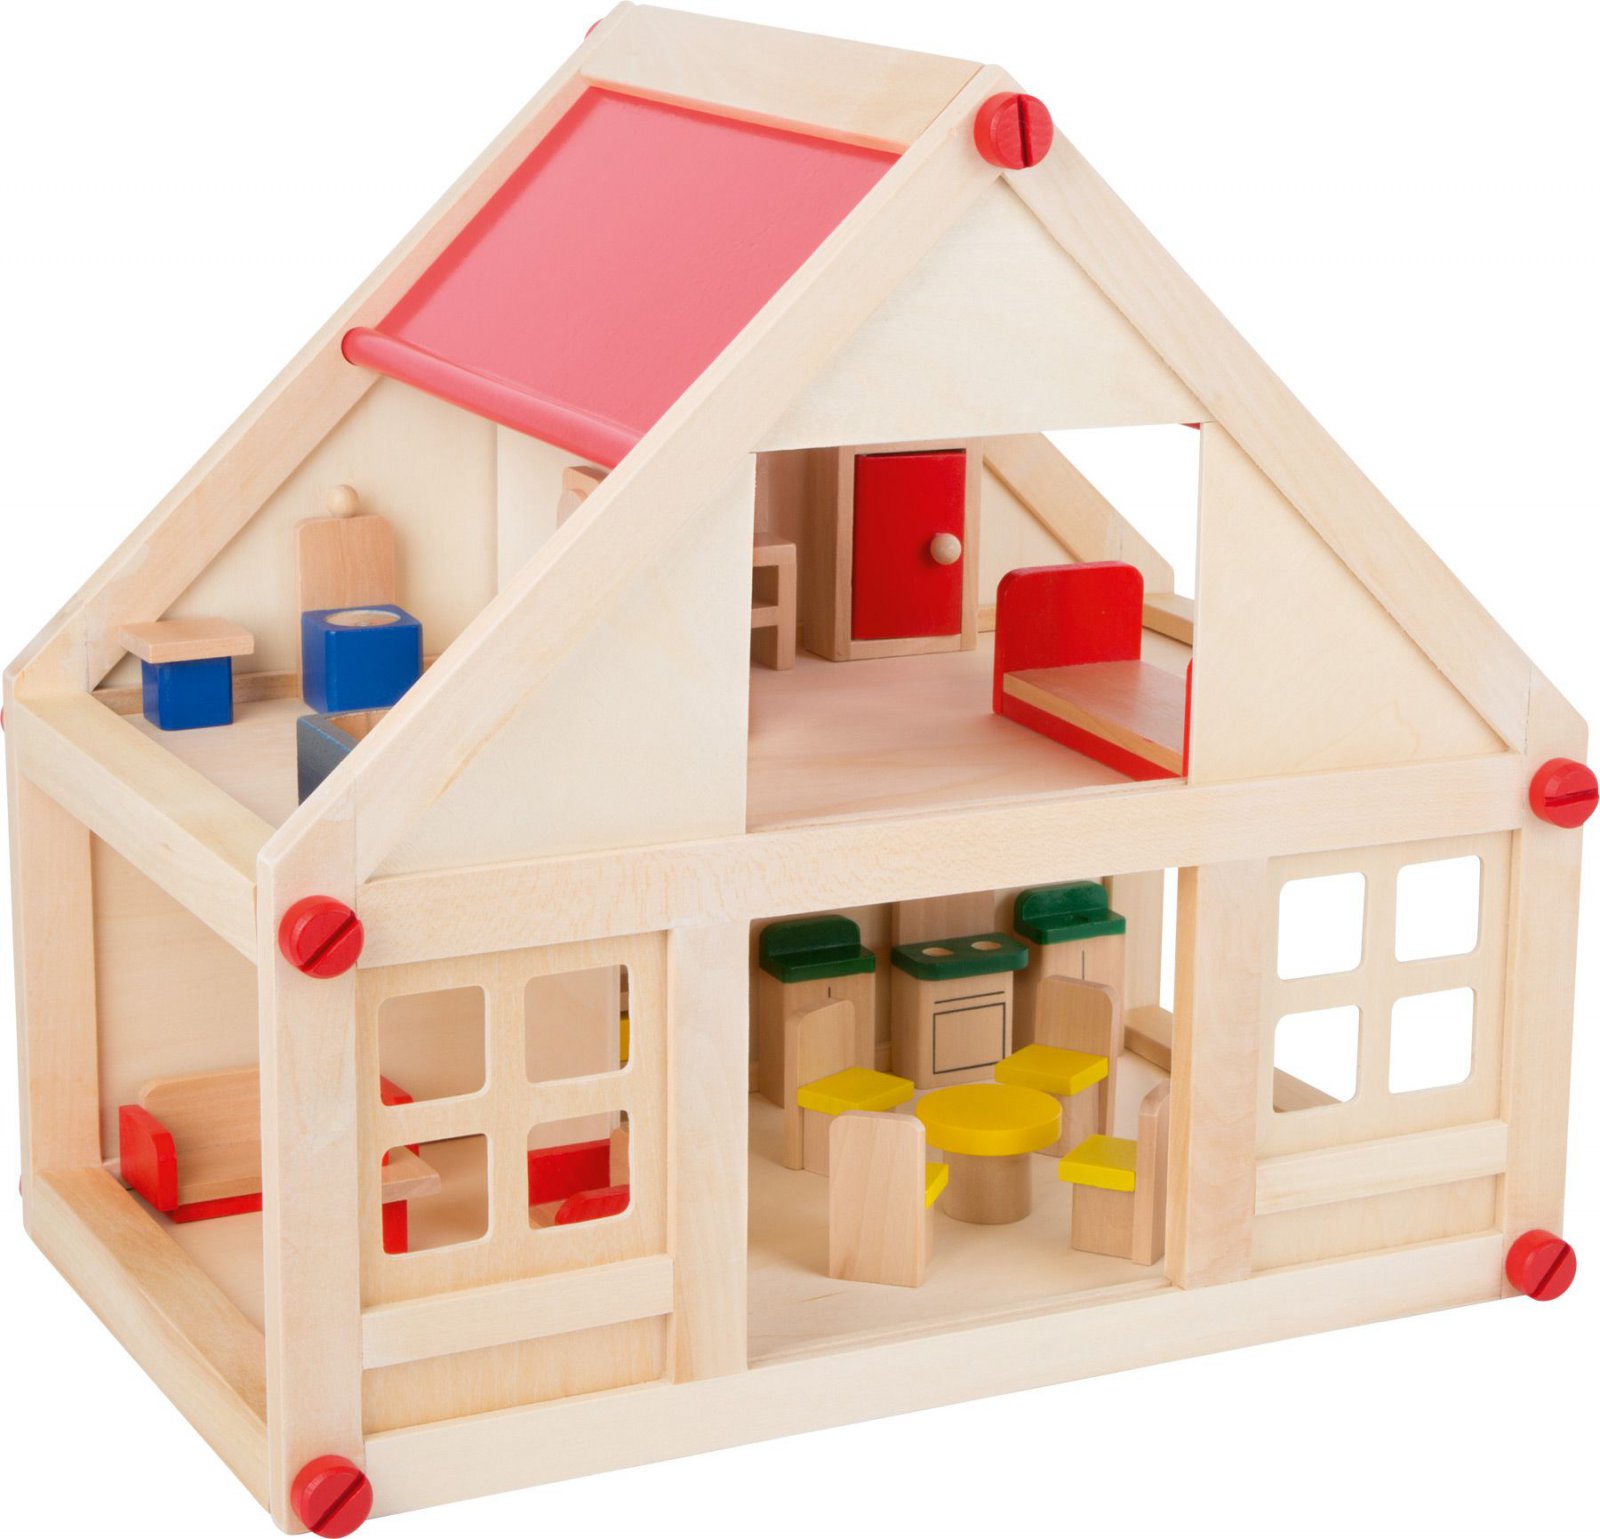 Wohnhaus Puppenhaus aus Holz inkl. Möbel Spielhaus Puppen